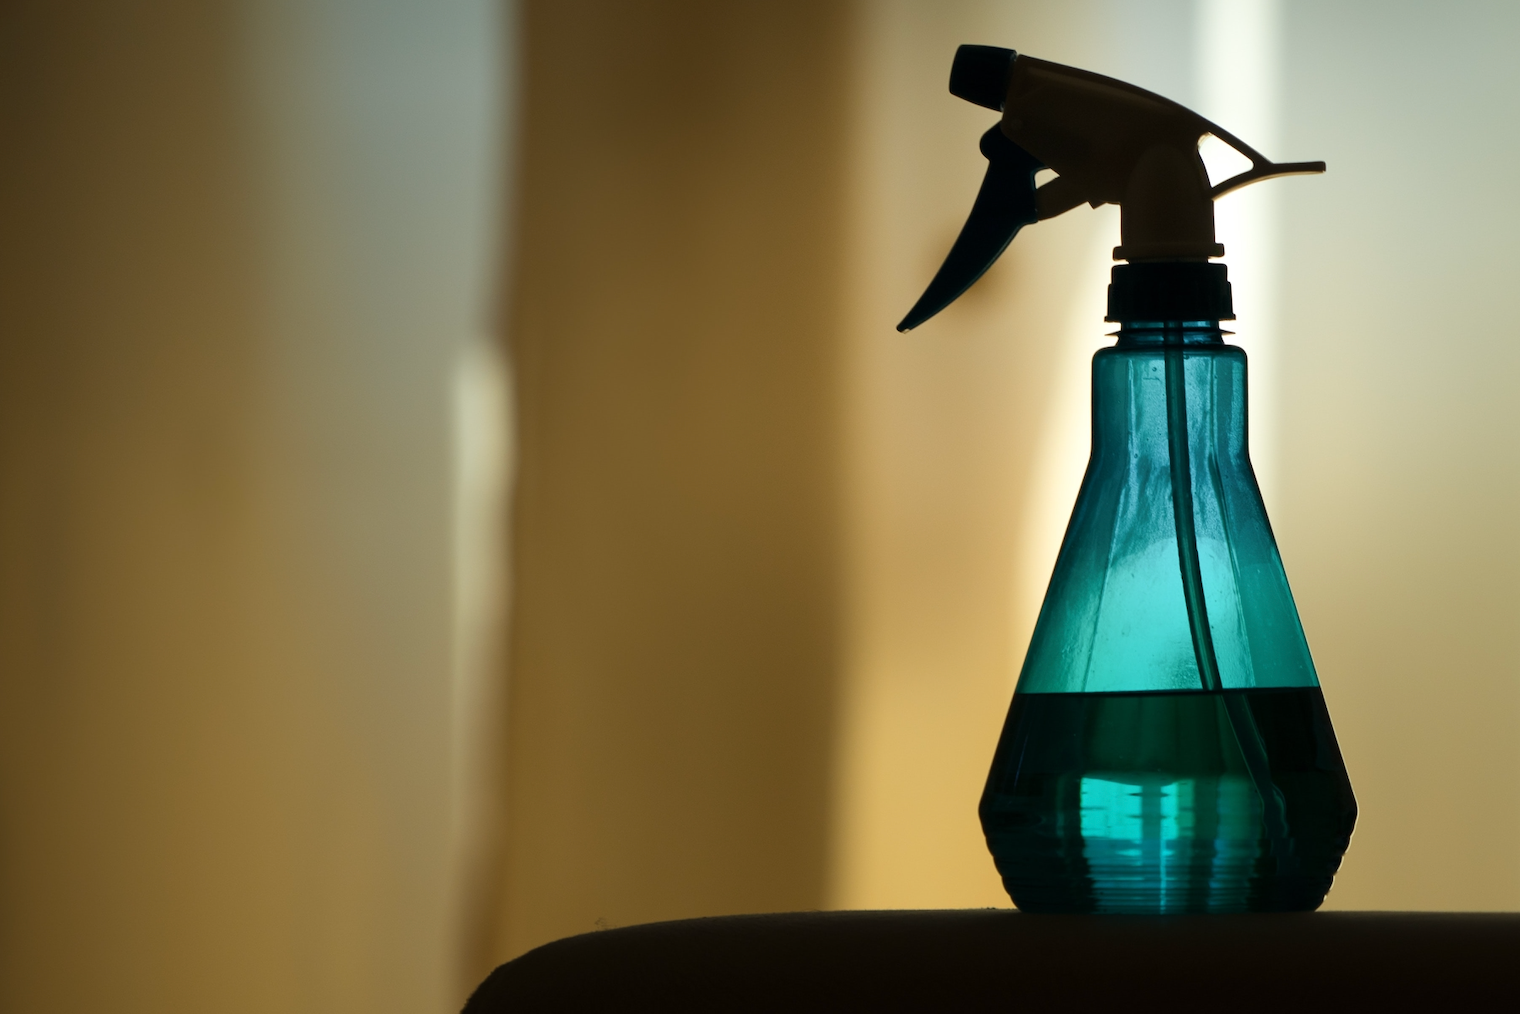  Better Homes & Gardens Aromatherapy Spray Causes Melioidosis Outbreak